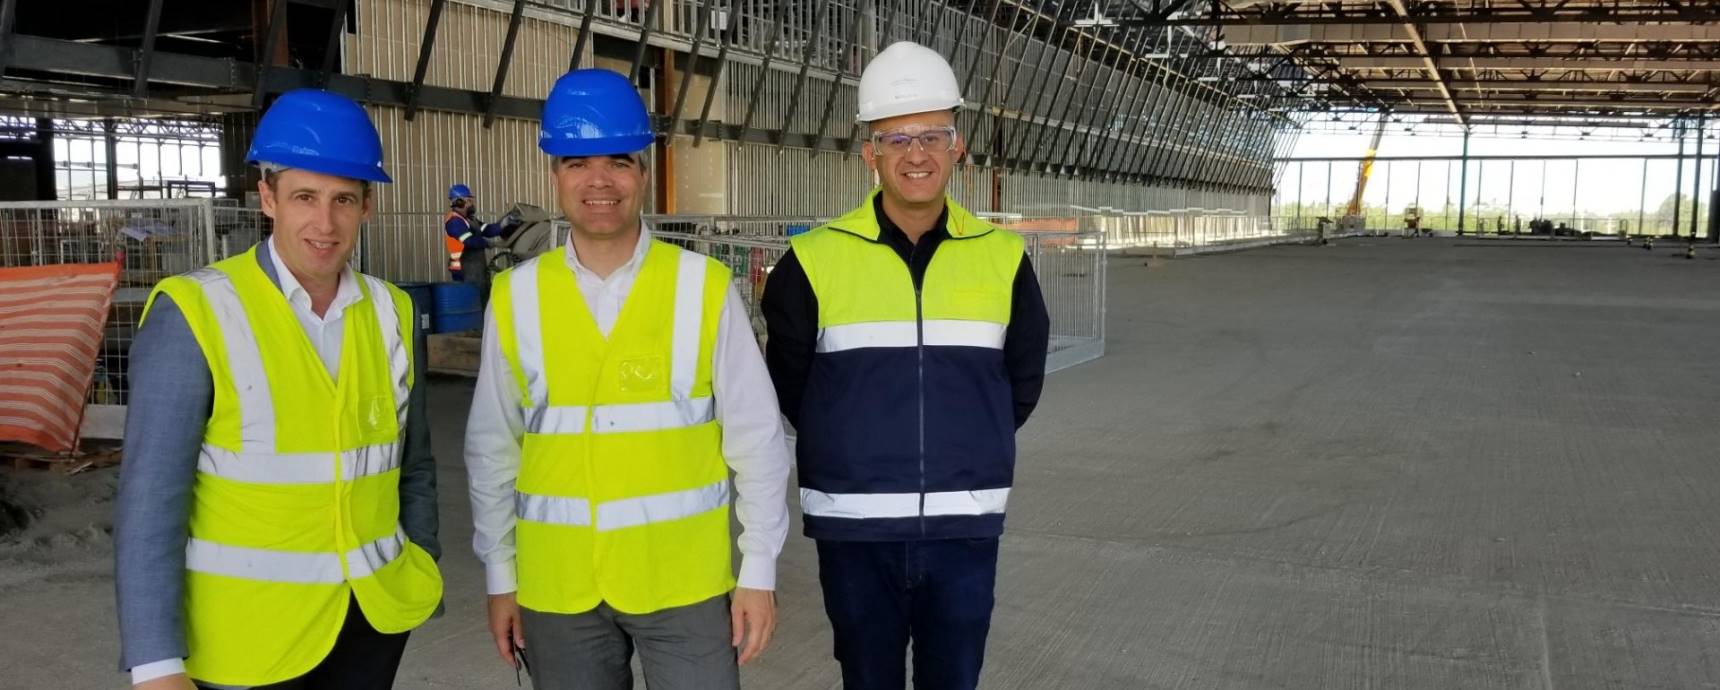 Stephan Widrig, CEO do Grupo Zurich Airport, visita obras do novo aeroporto de Florianópolis